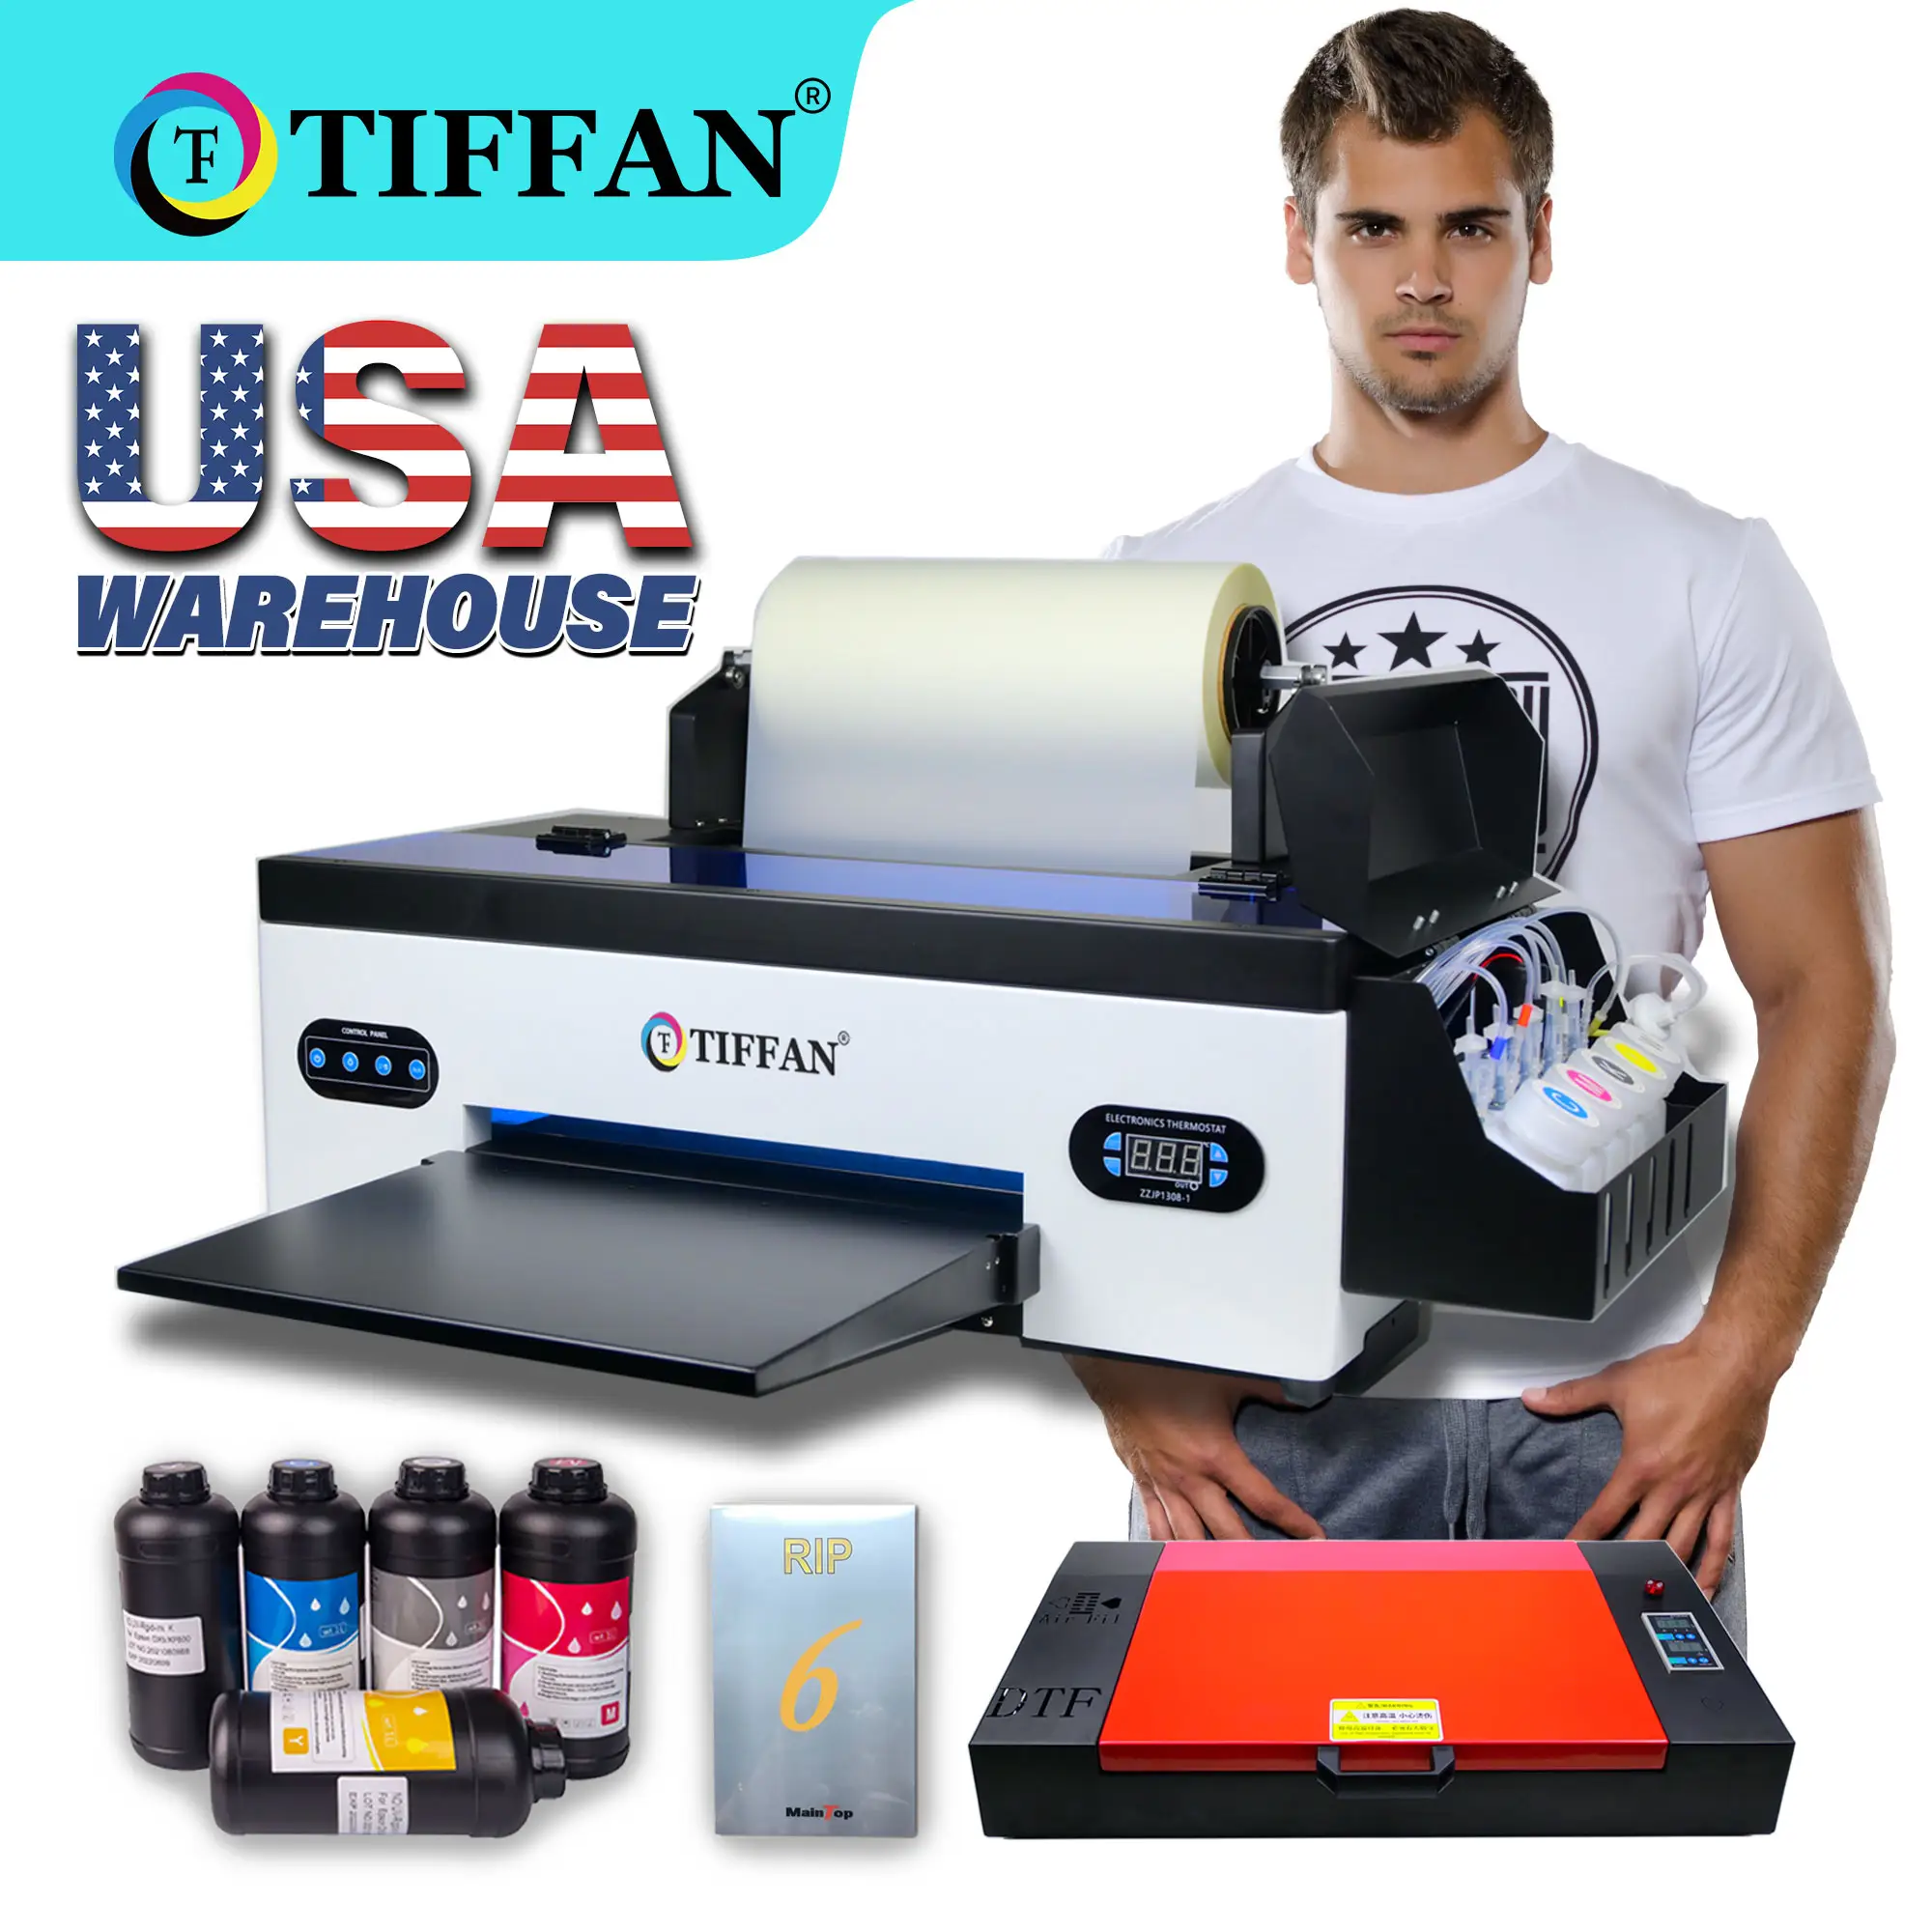 Spedizione veloce stampante dtf da 12 pollici stampante a2 xp600 dtf stampante macchina da stampa t-shirt stampante a3 dtf